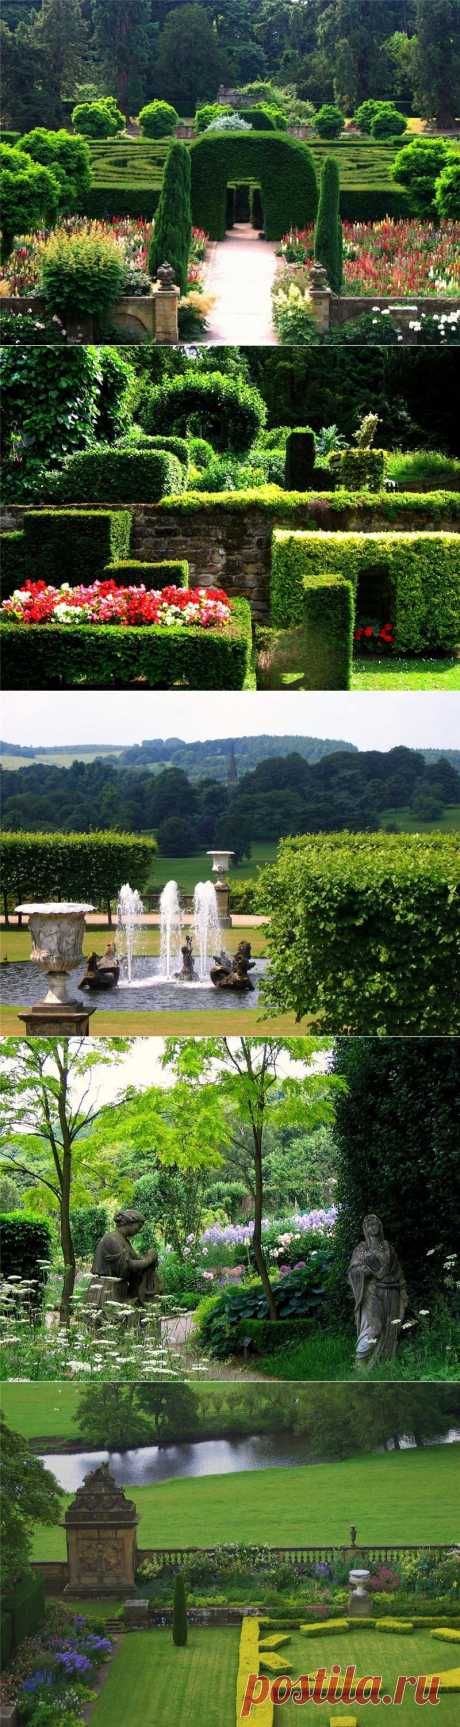 The Gardens at Chatsworth, Derbyshire. ���������� �� LiveInternet - ���������� ������ ������-���������